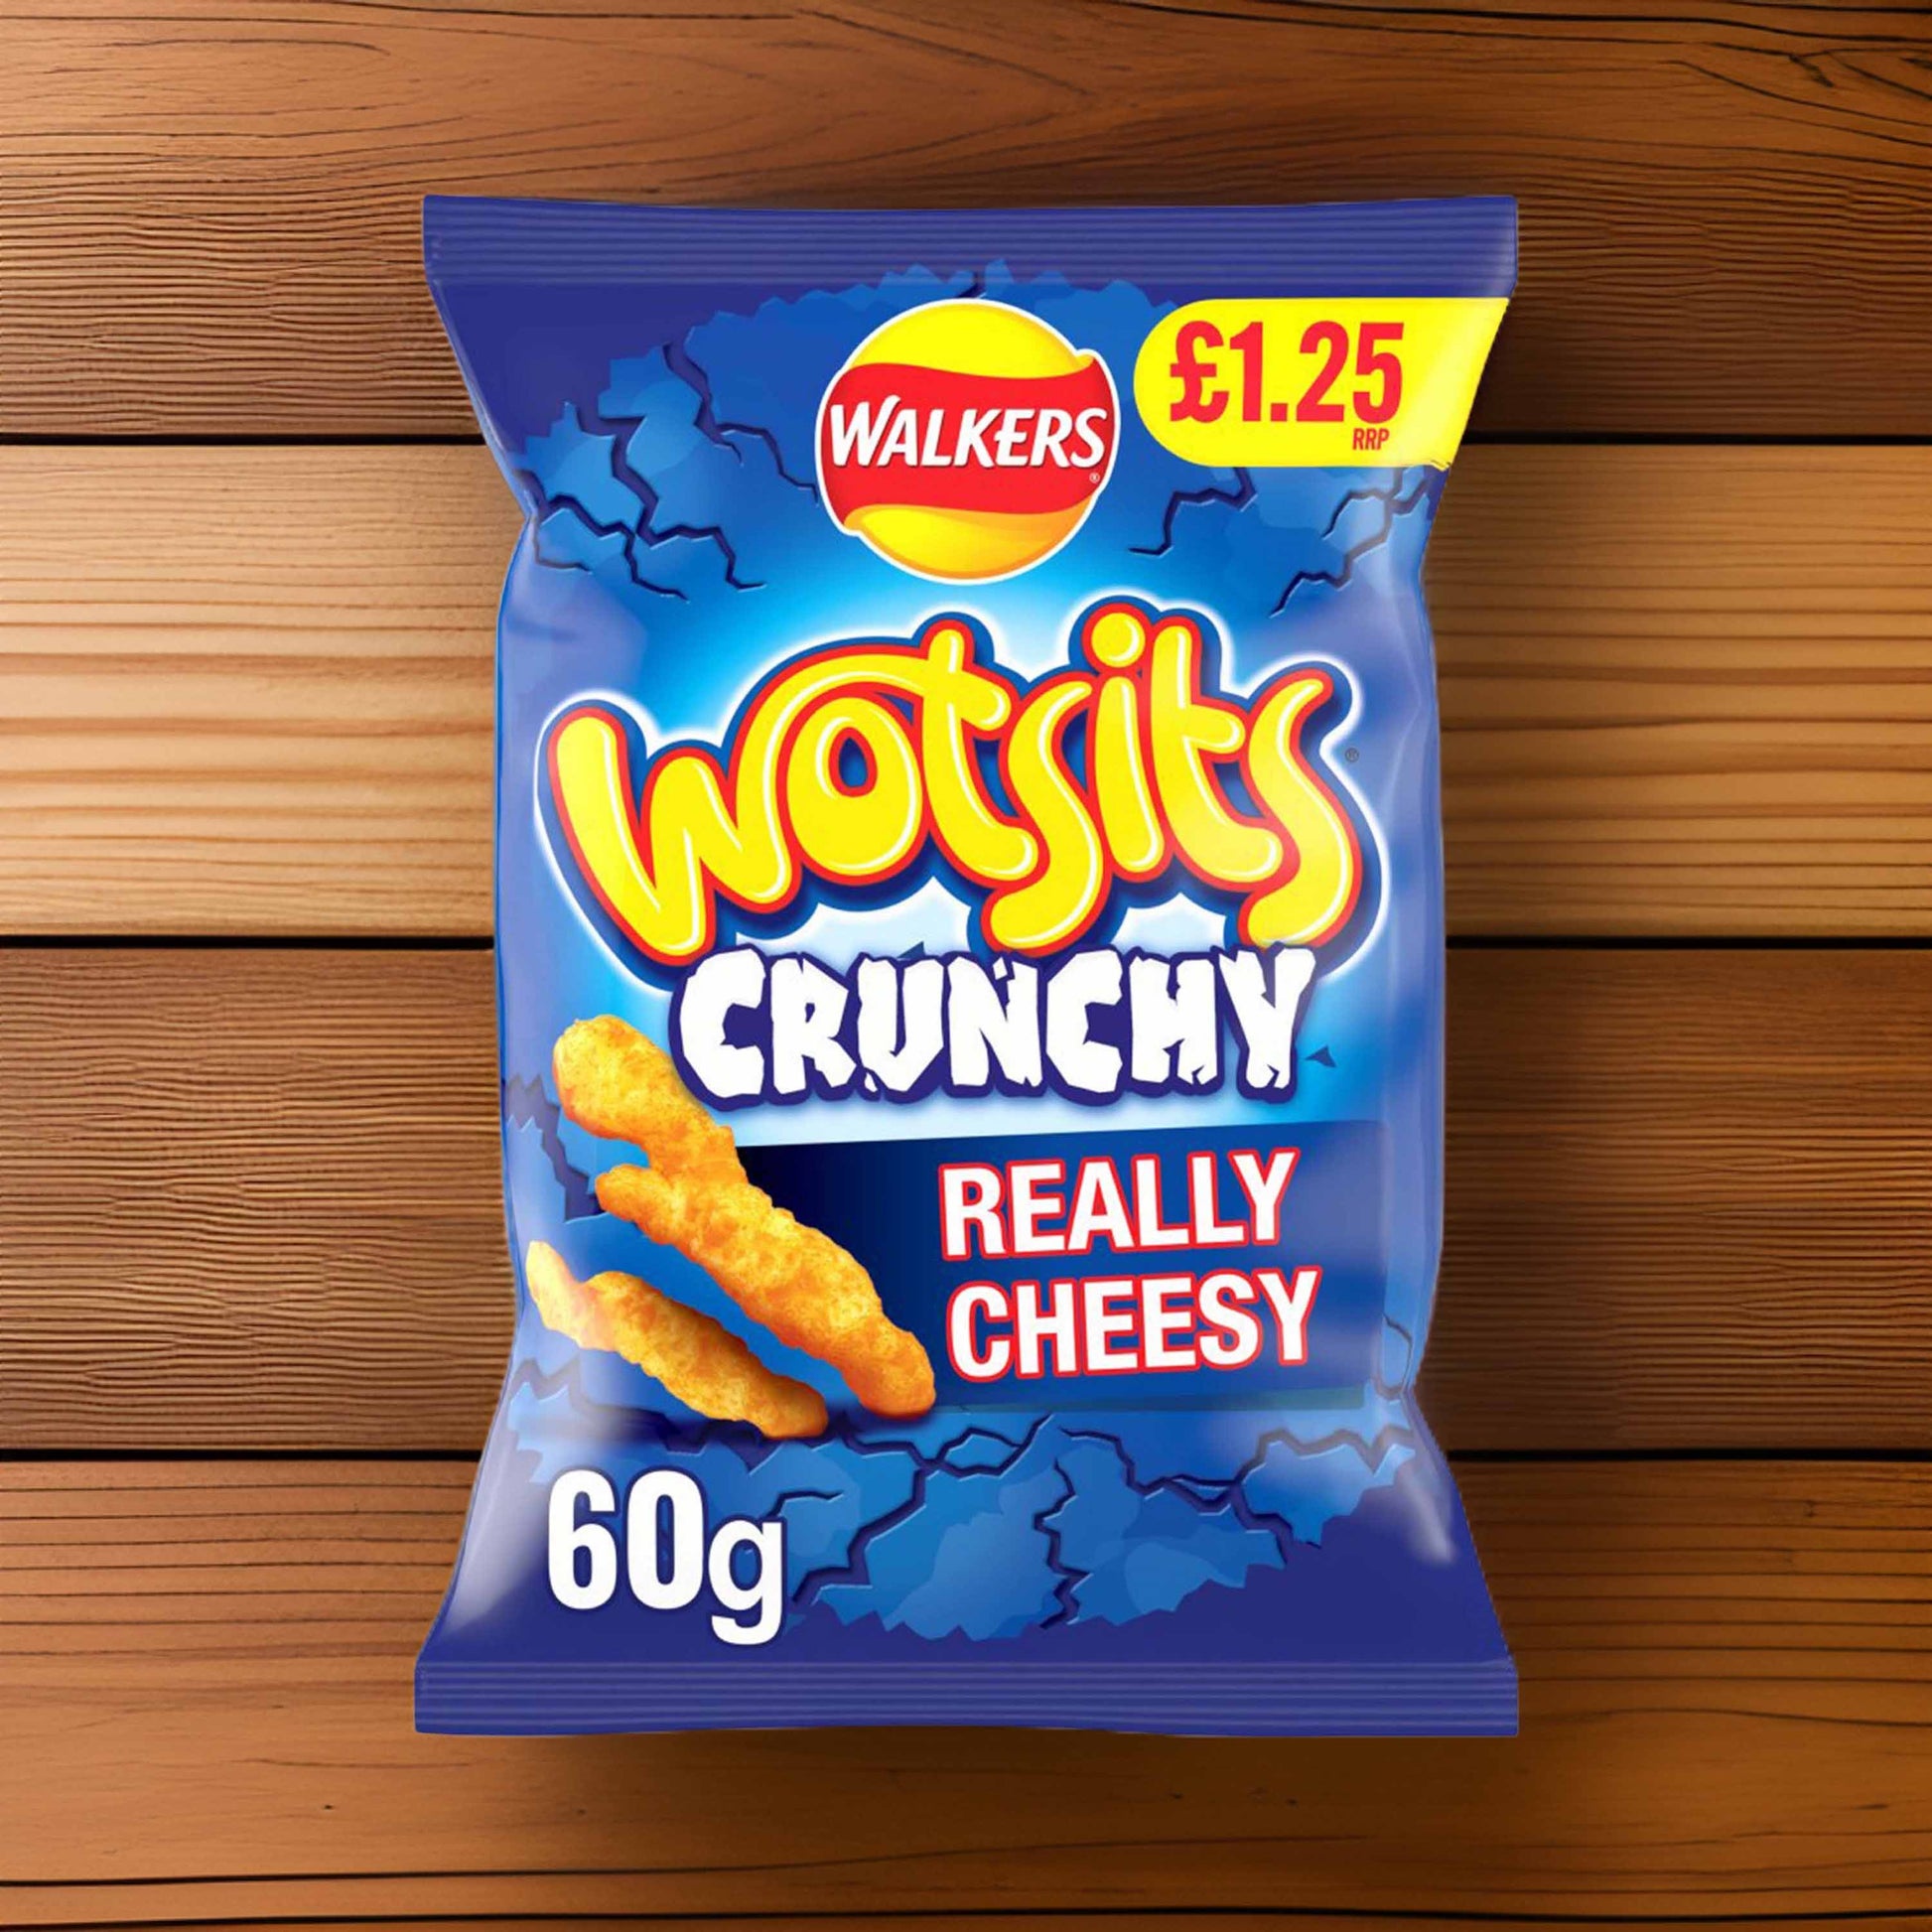 Wotsits Crunchy Really Cheesy 60g – (£1.25 Bag) - Really Cheesy